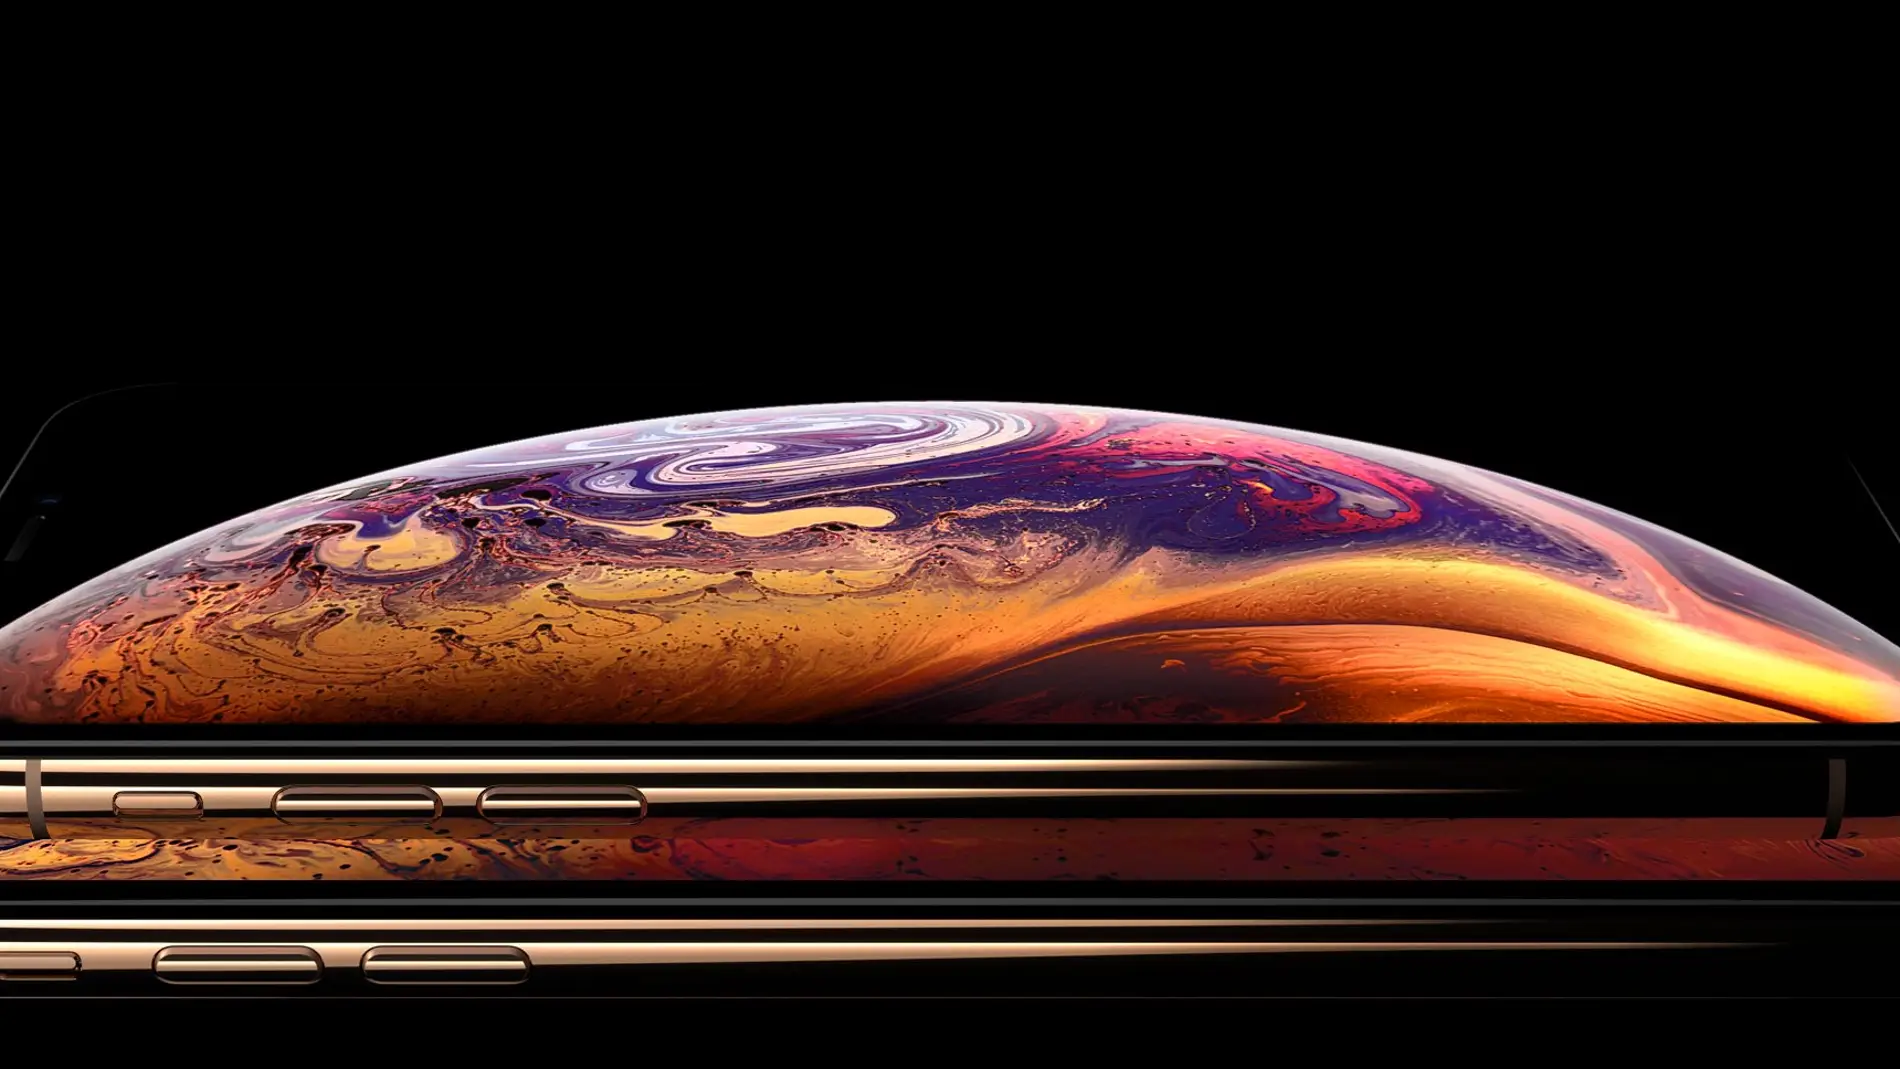 El iPhone actual parecerá un objeto de la prehistoria cuando lo comparemos con el iPhone que tendremos en diez años